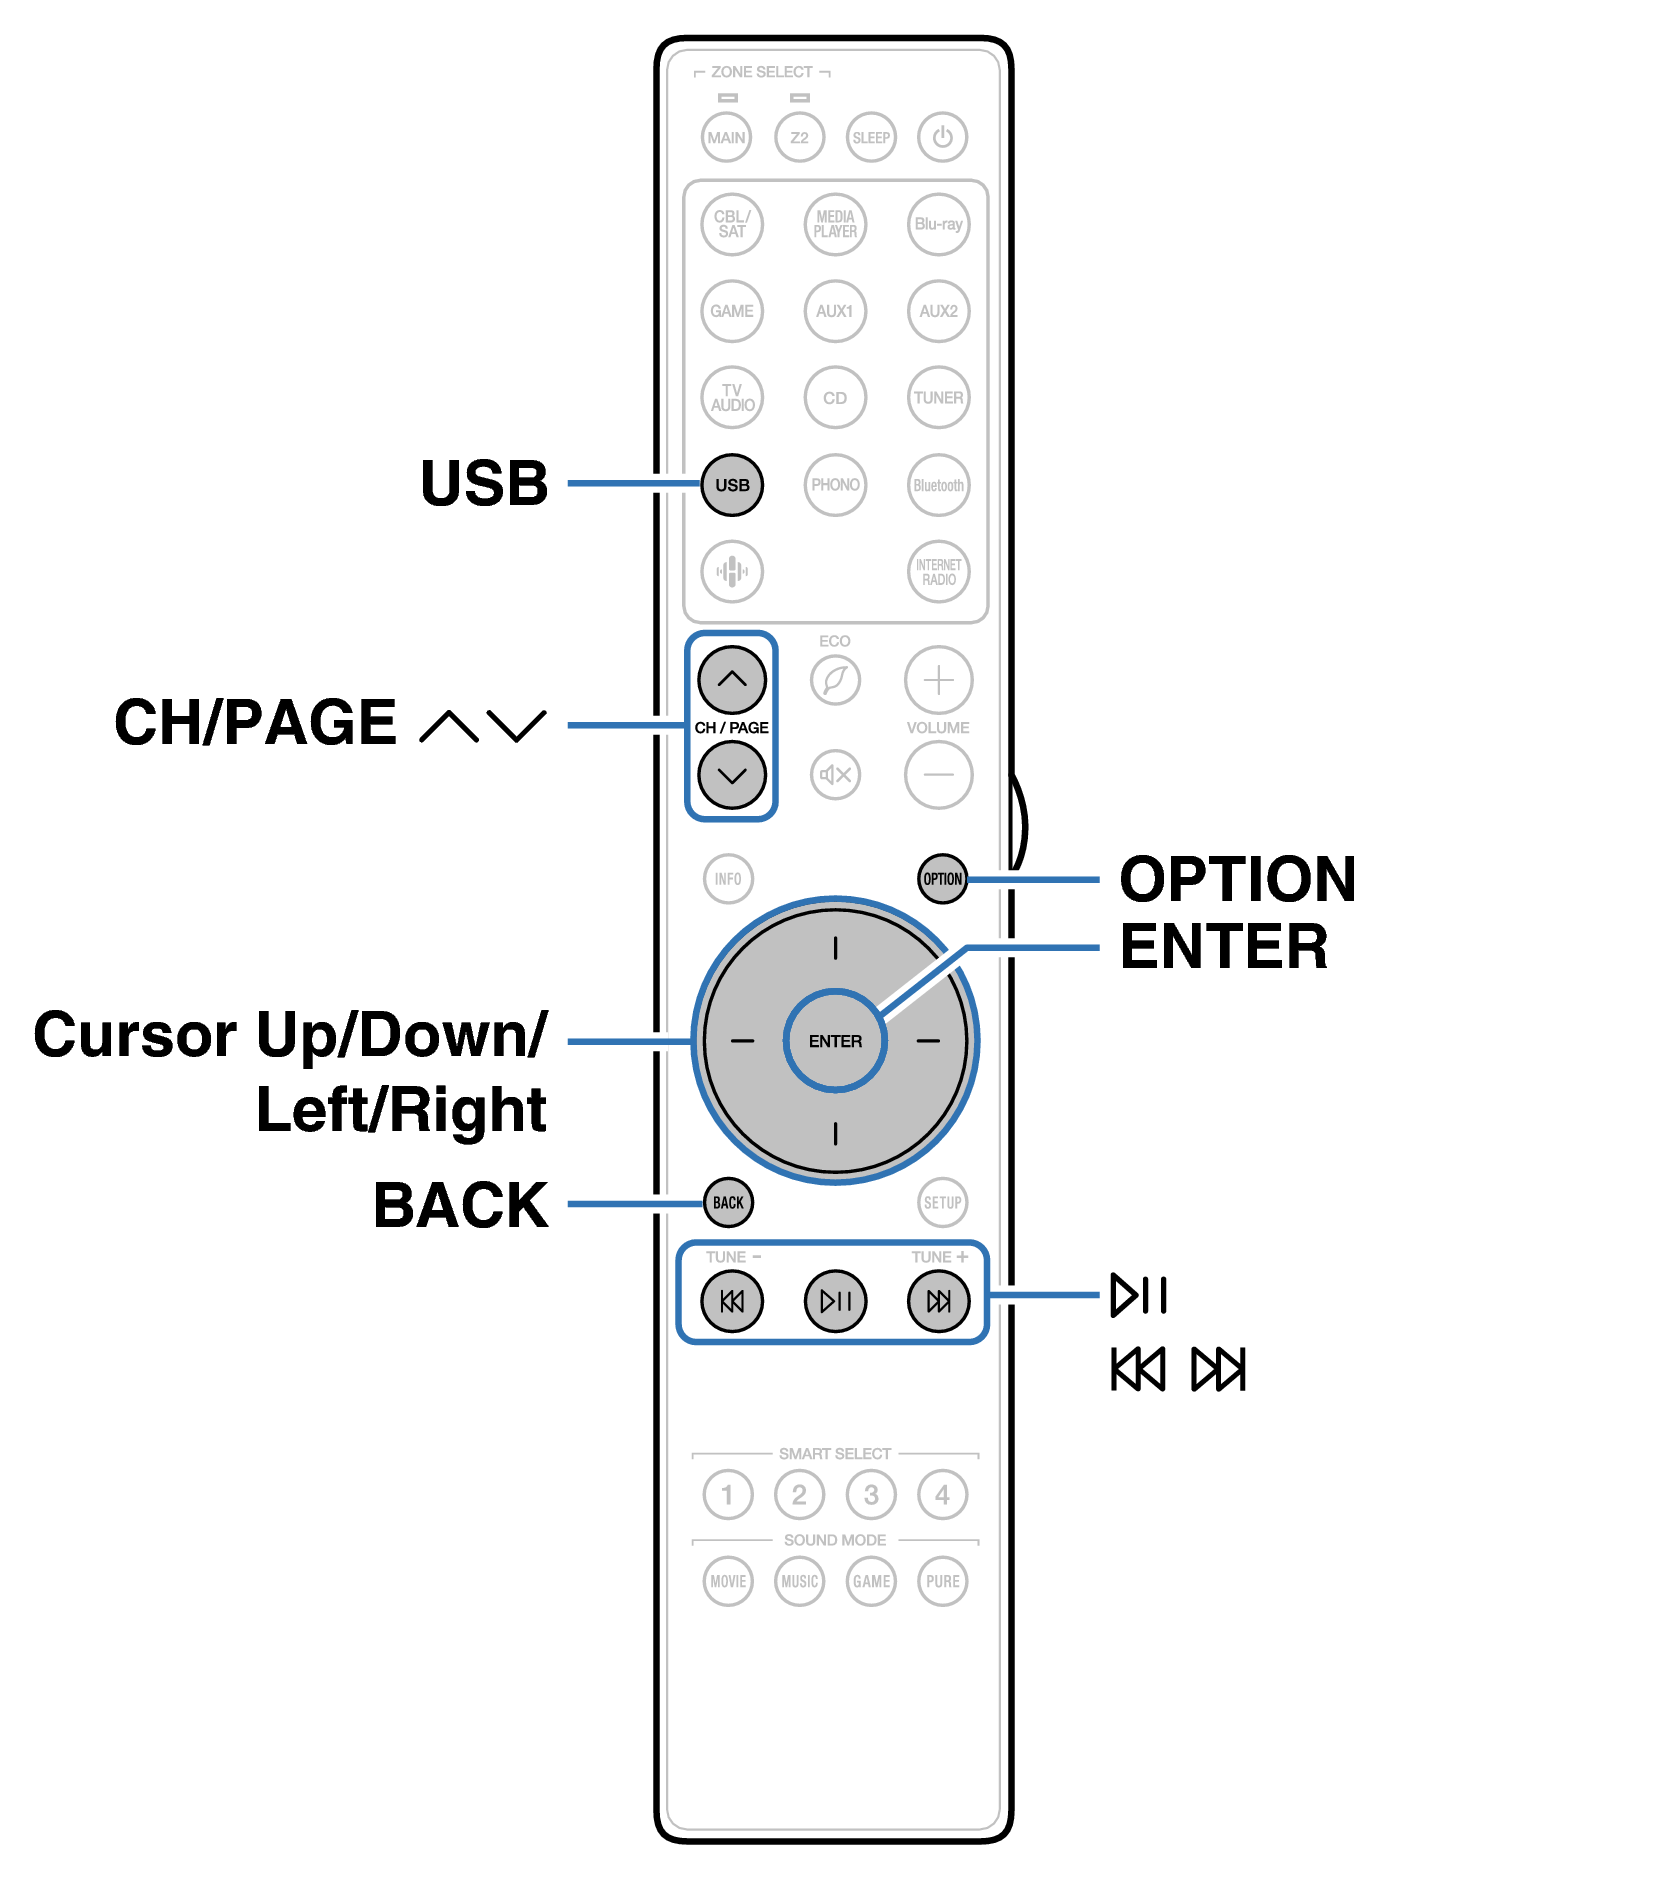 Ope USB RC050SR